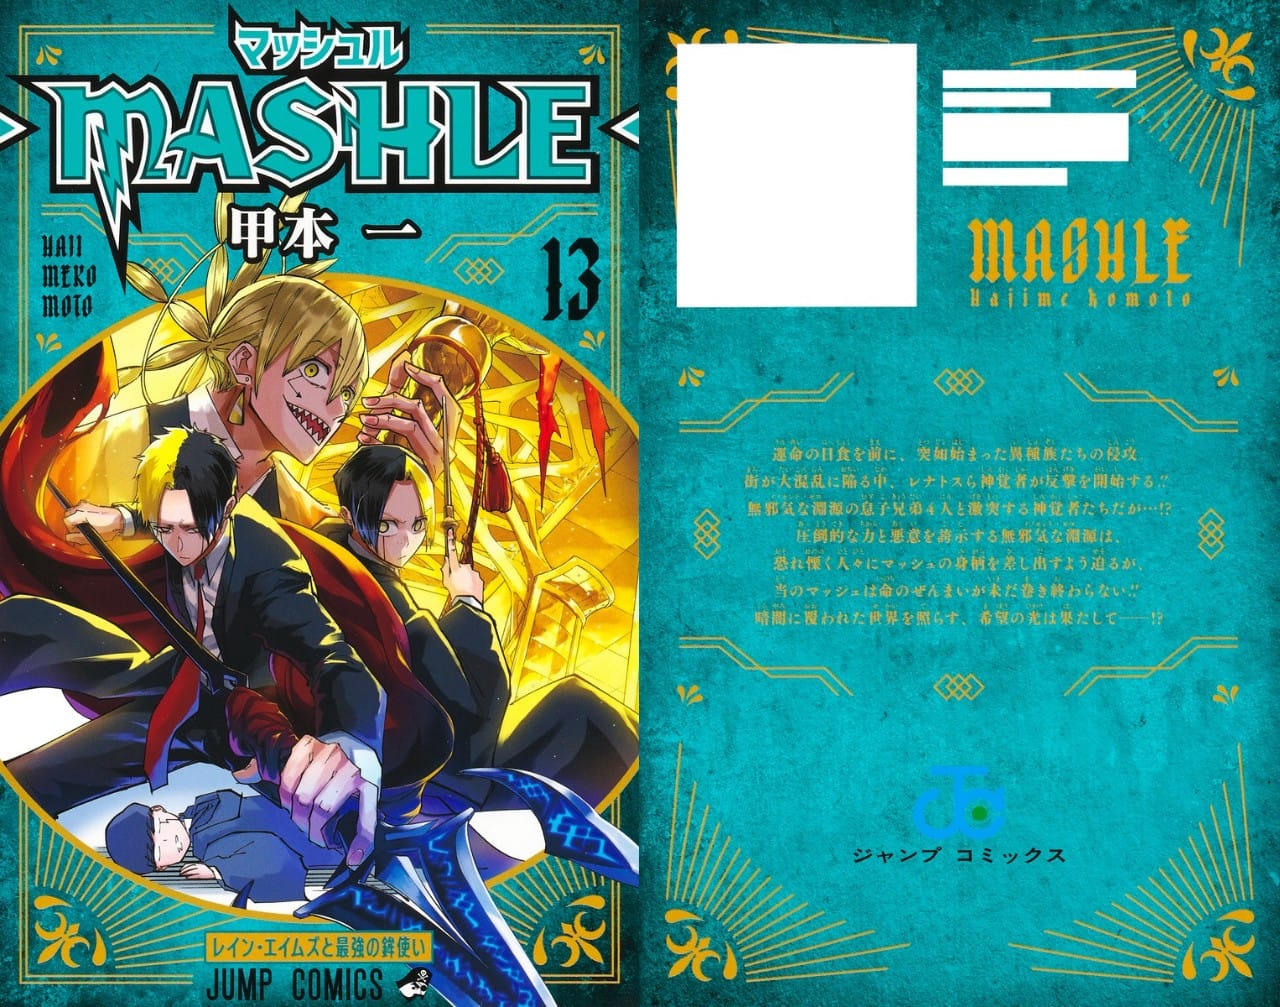 甲本一「マッシュル-MASHLE-」第13巻 10月4日発売!